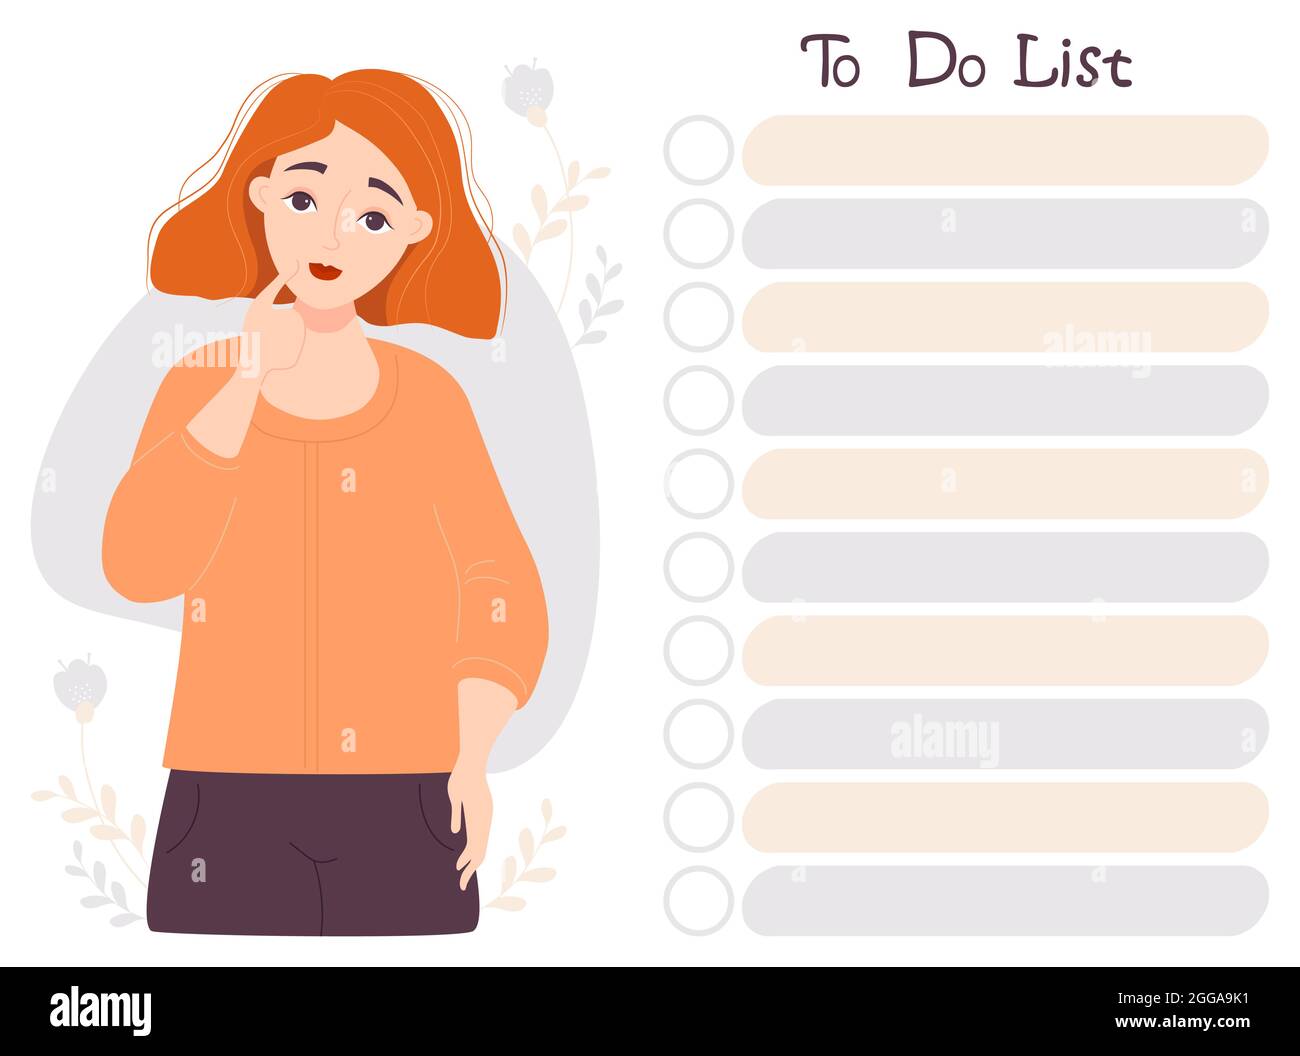 Organizador de listas de tareas. Una muchacha pensante de pelo rojo linda  mira la lista de cosas que hacer. Ilustración vectorial. Documento de  notas, planificación de días, gestión del tiempo. Dibujo Imagen